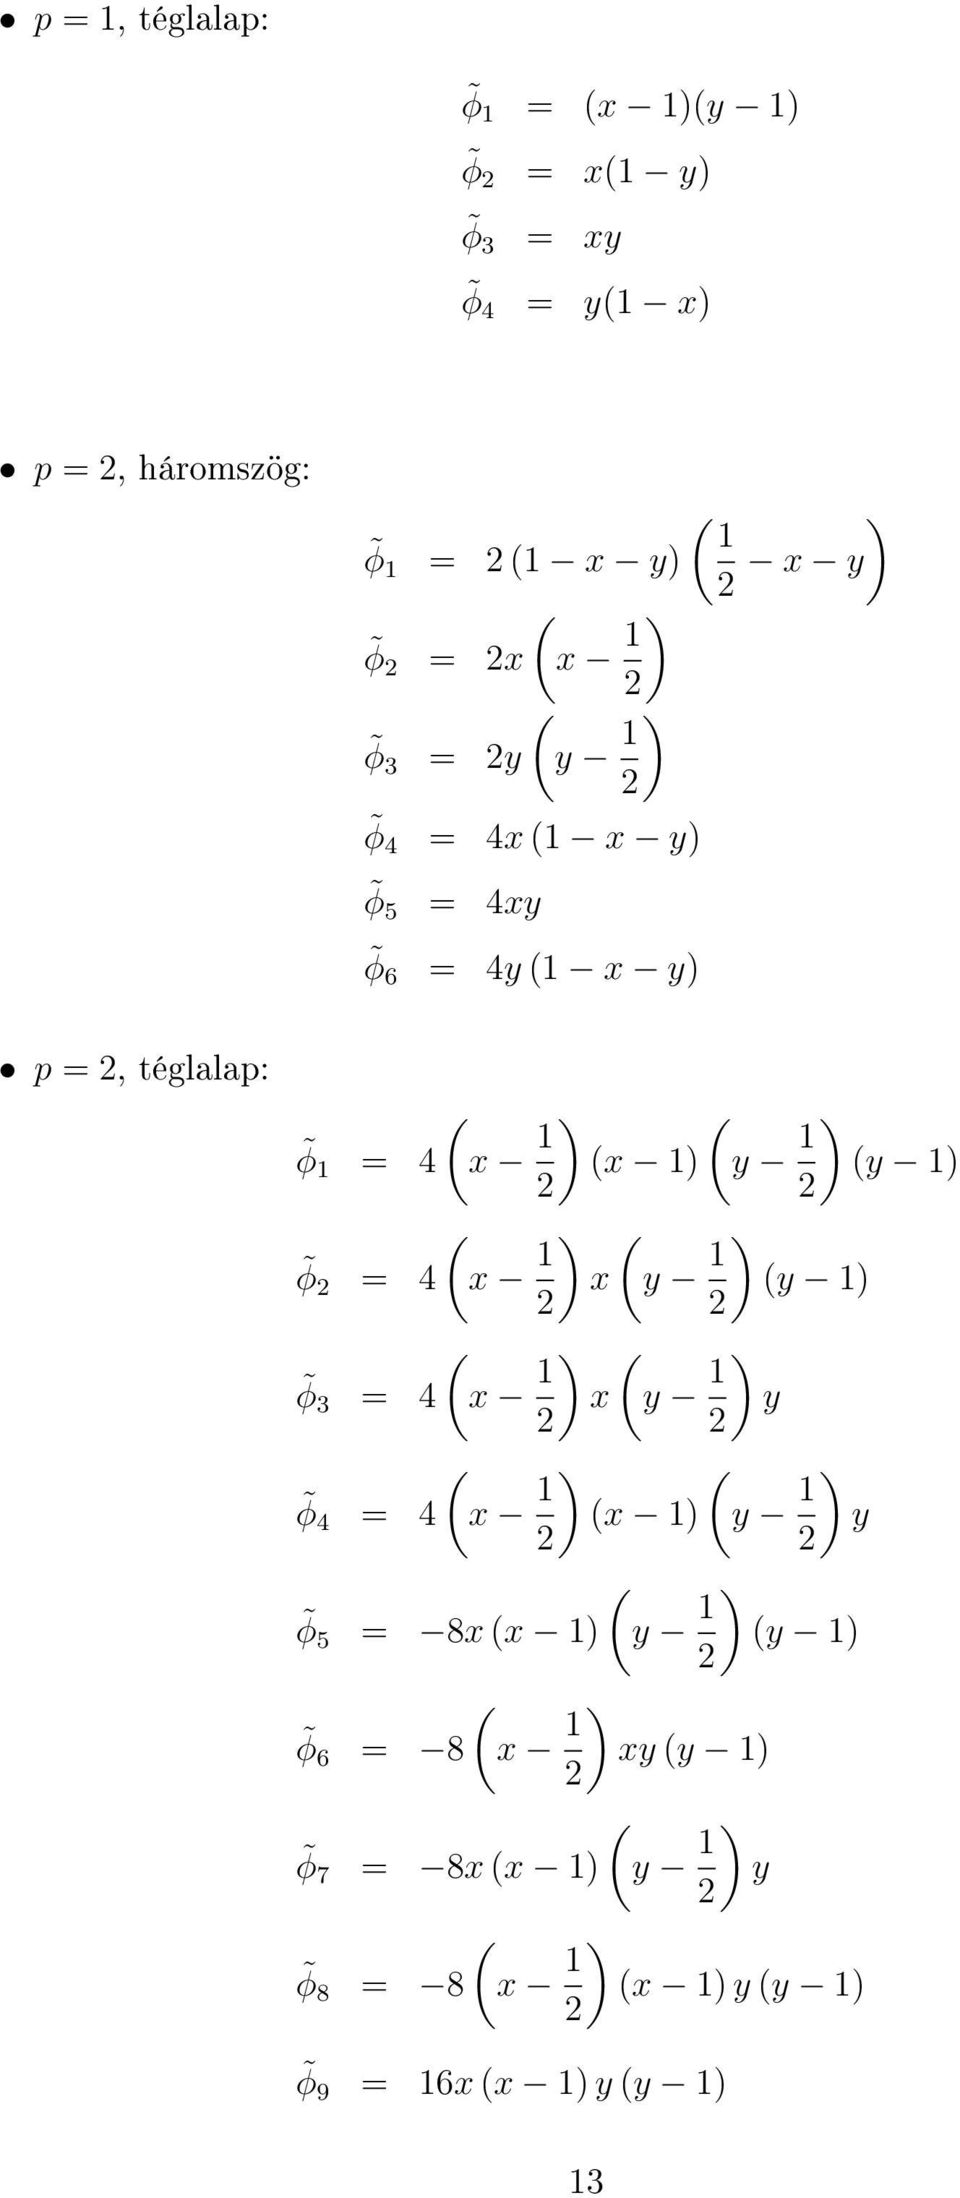 ) y 1) 2 2 φ 2 = 4 x 1 ) x y 1 ) y 1) 2 2 φ 3 = 4 x 1 ) x y 1 ) y 2 2 φ 4 = 4 x 1 ) x 1) y 1 ) y 2 2 φ 5 = 8x x